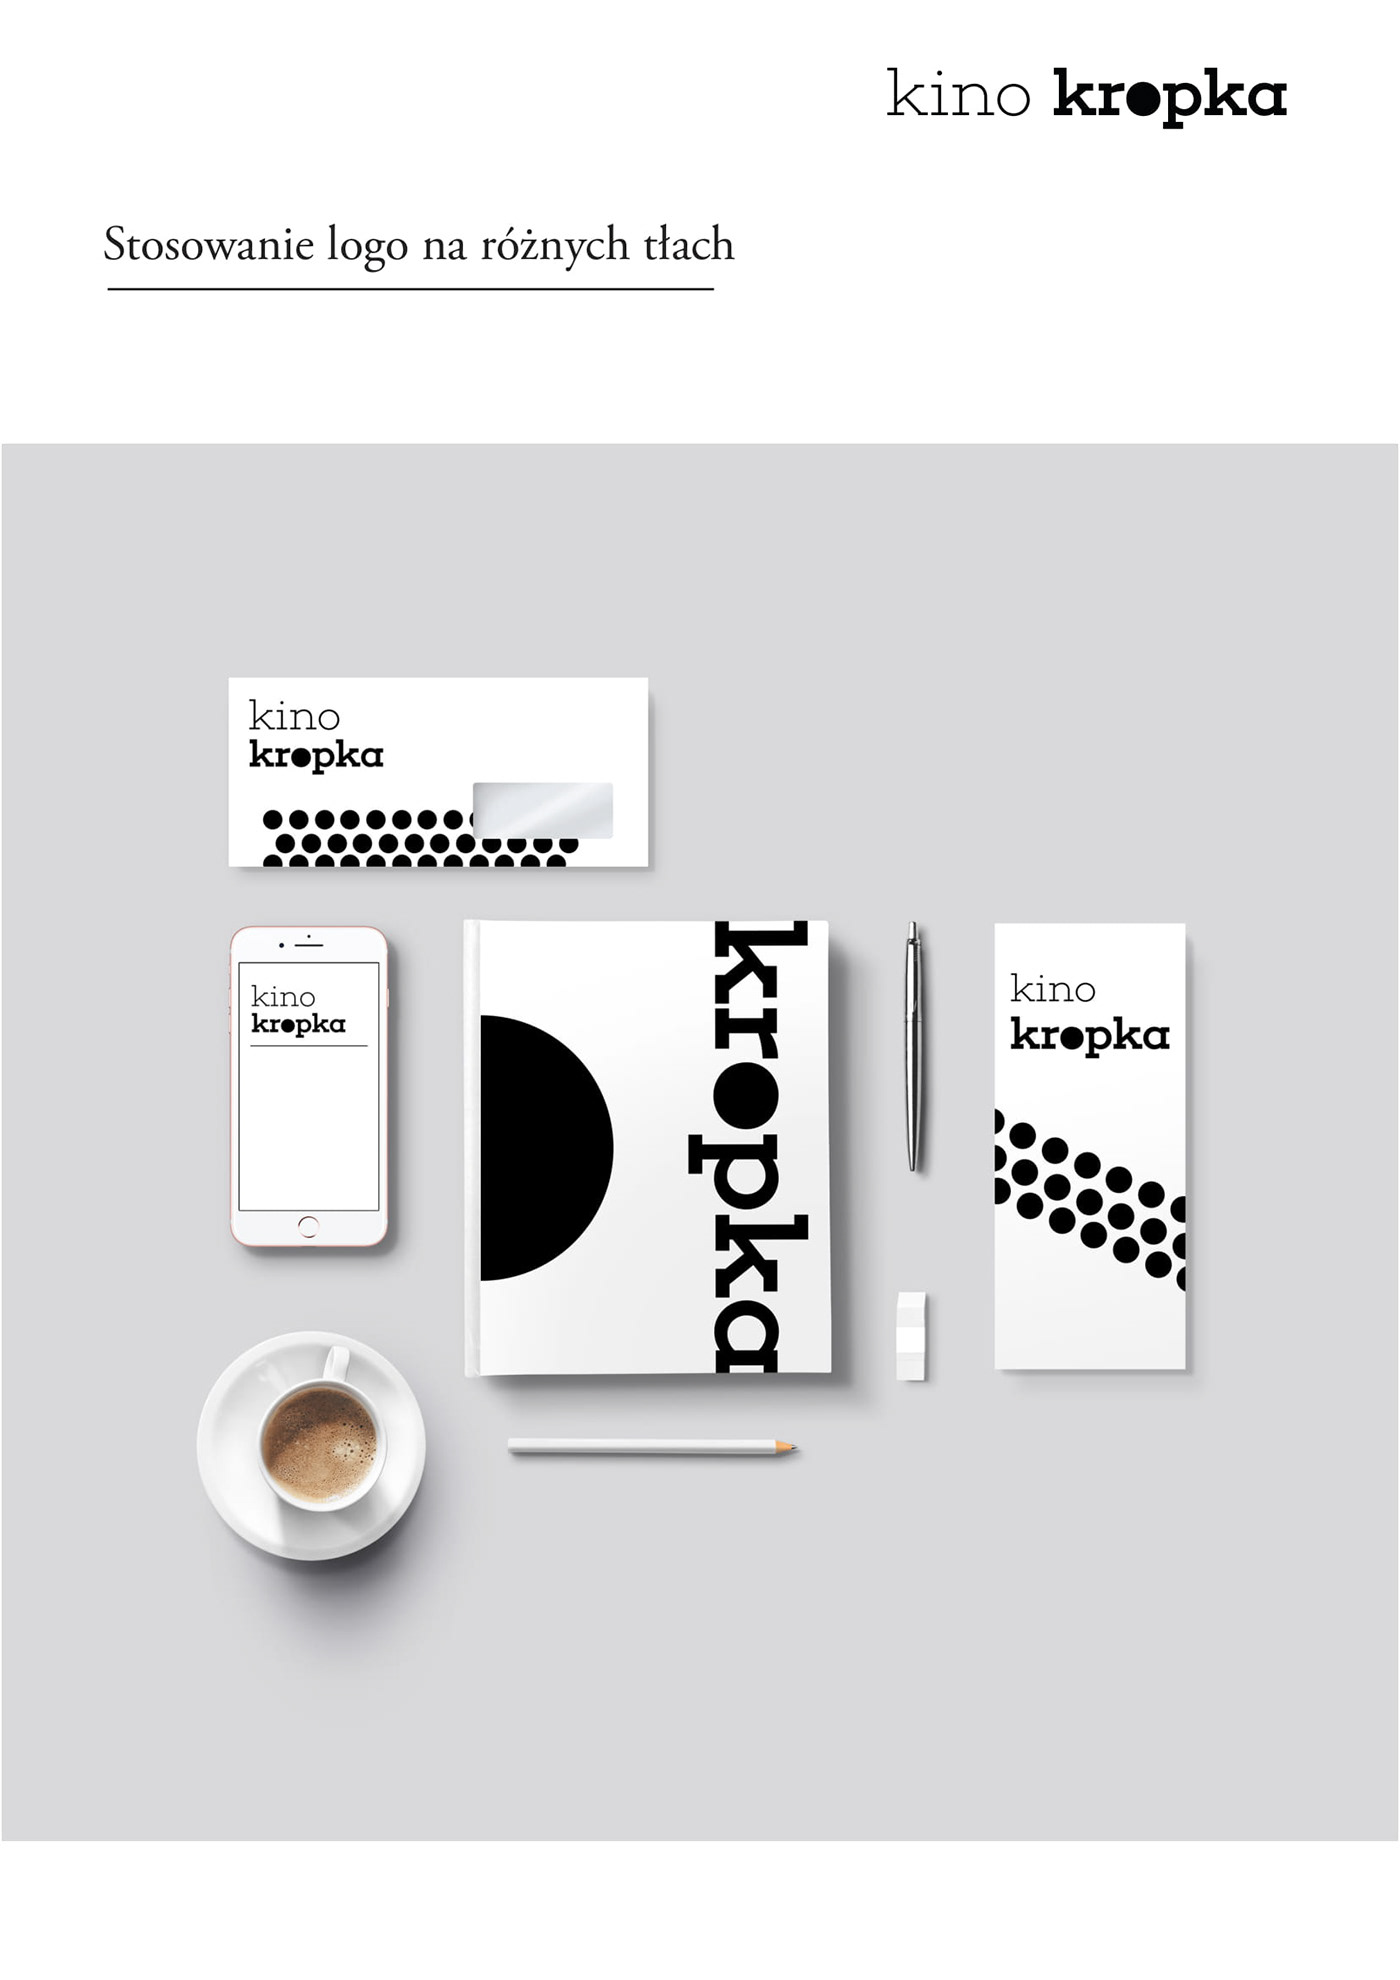 Corporate Design graphic design  branding 